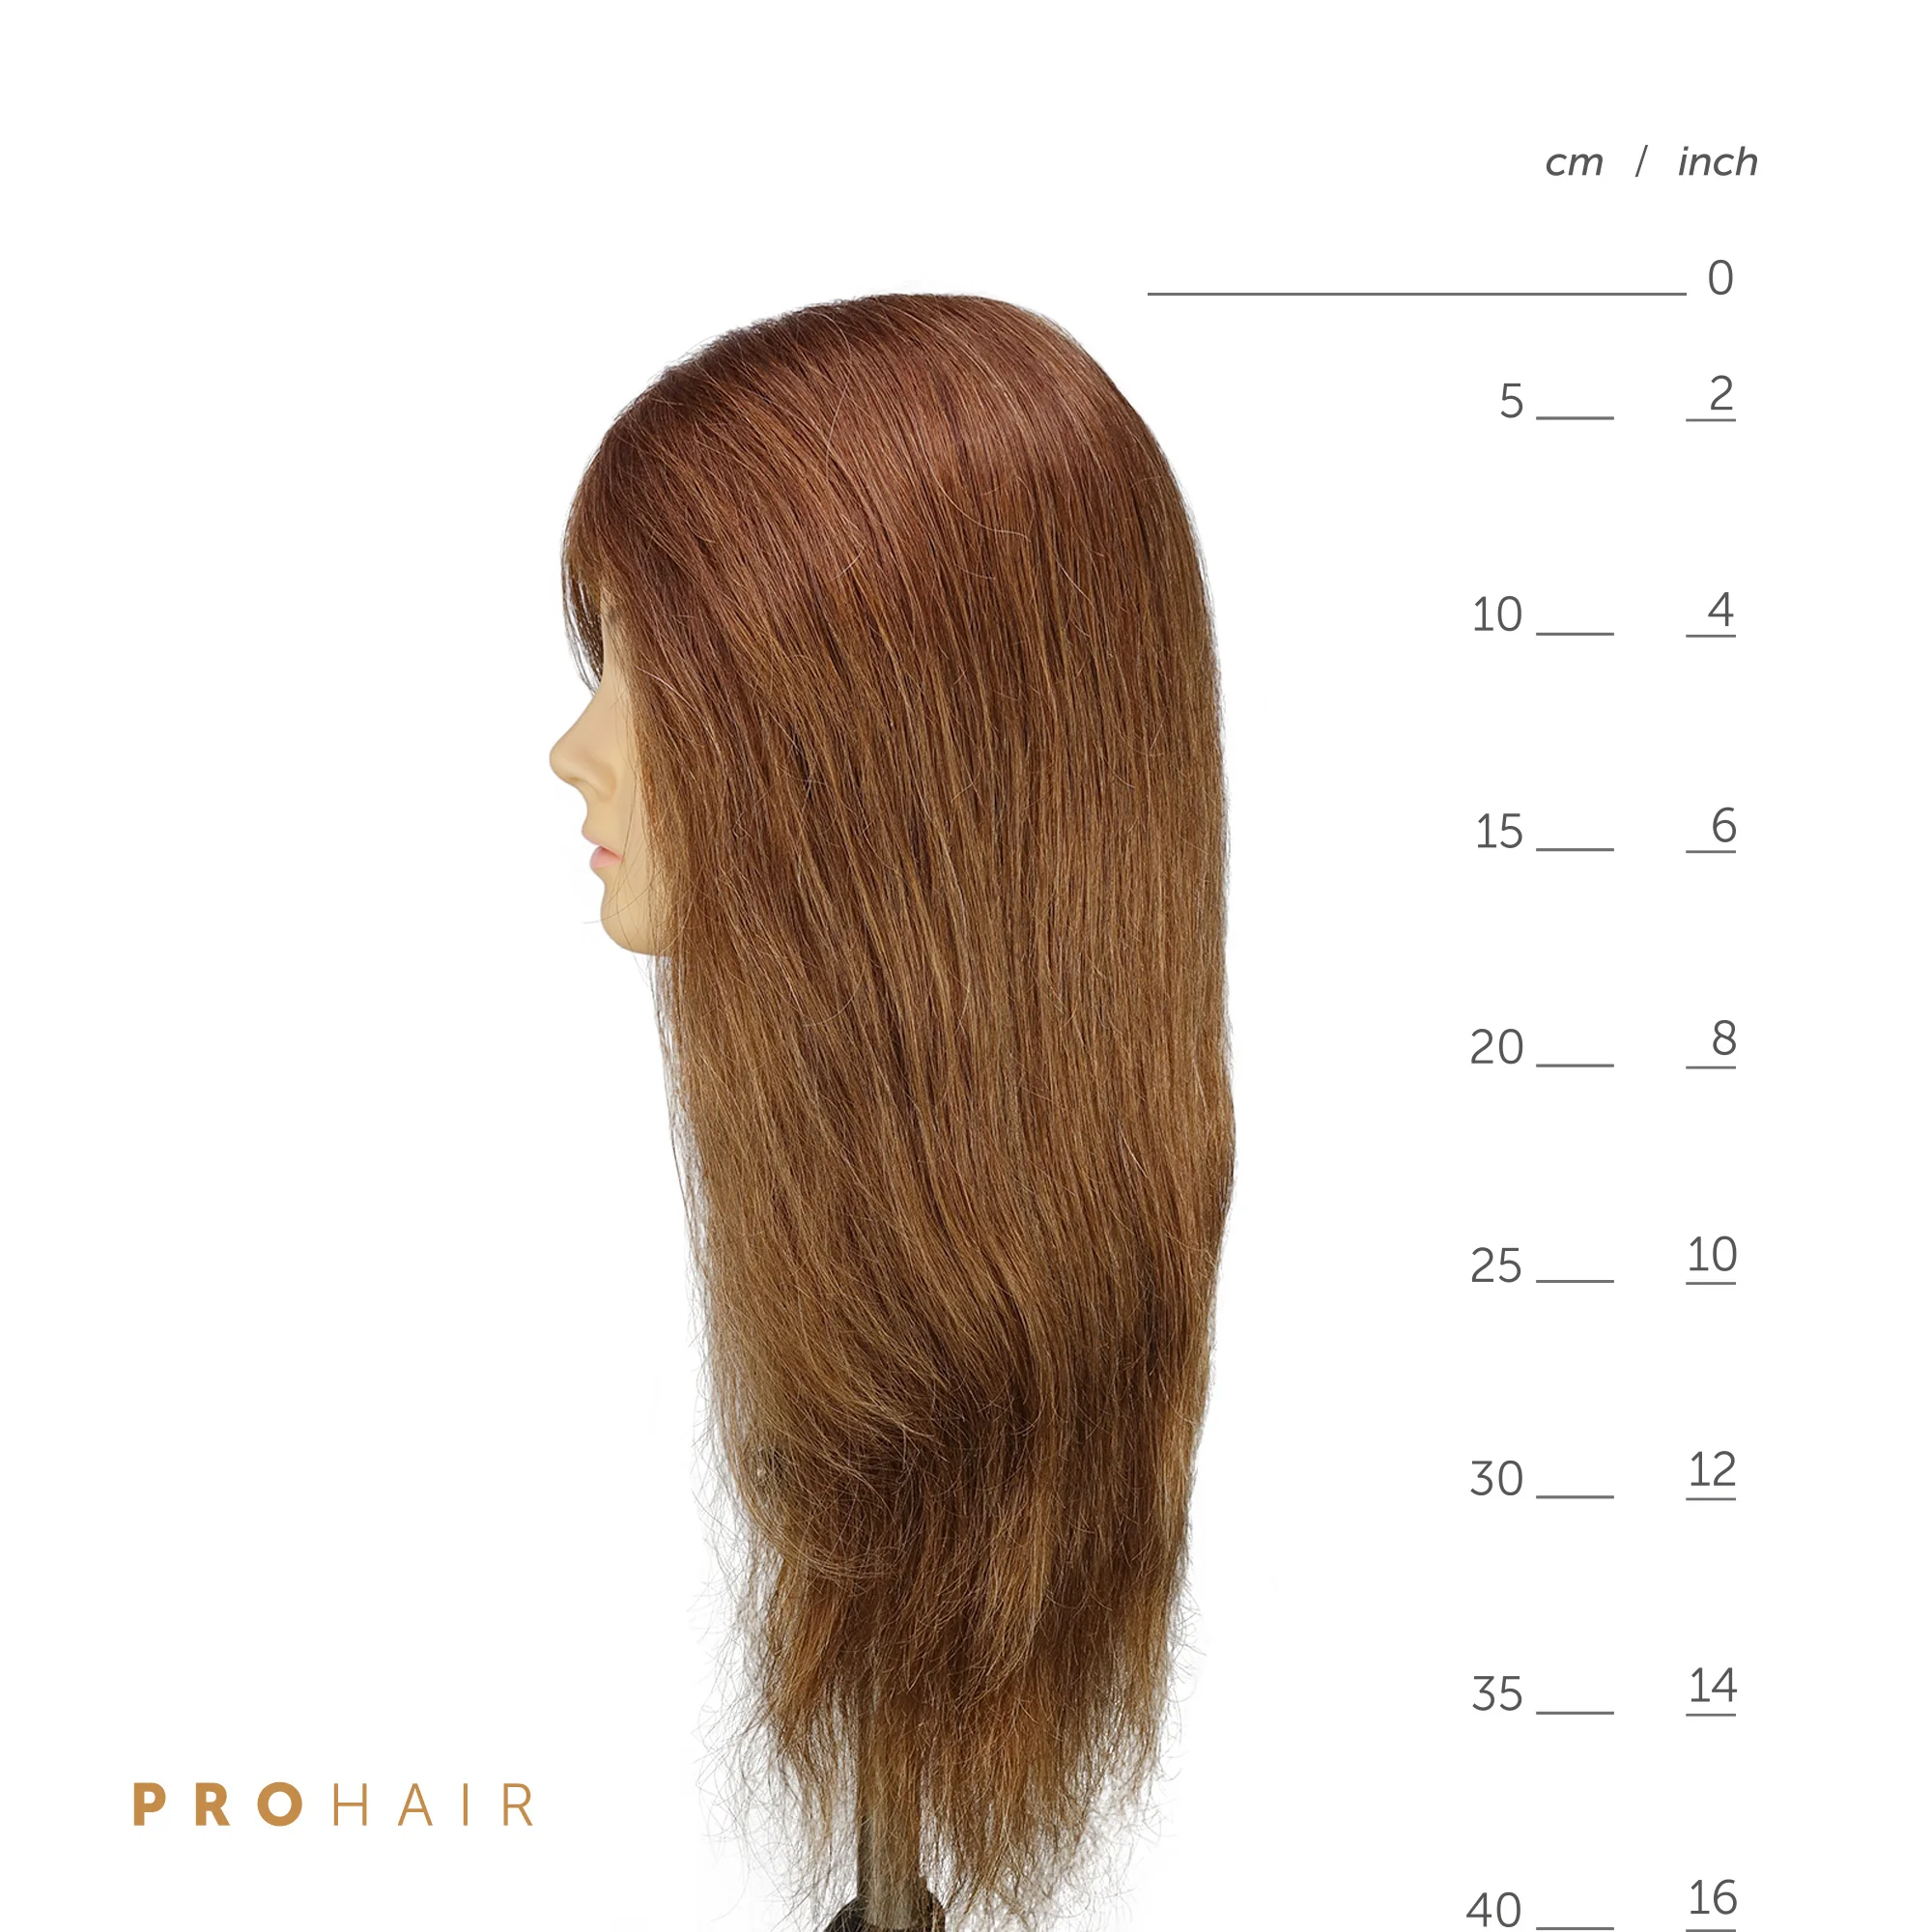 PROHAIR 50 см 2" человеческие волосы светильник коричневый тренировочная голова высокого класса манекен головы Парикмахерская Практика Обучение кукла голова